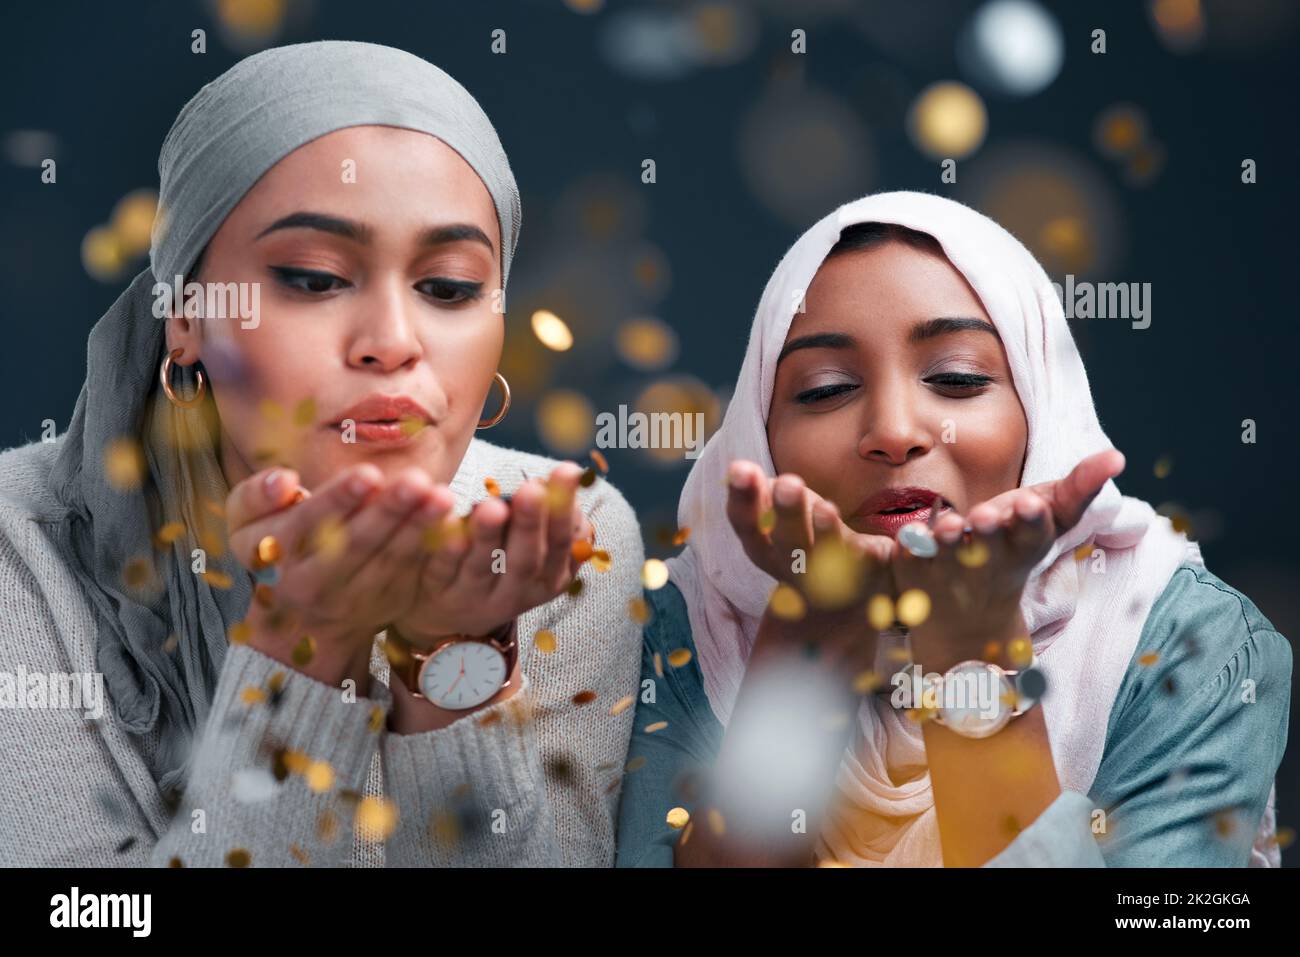 Hinterlassen Sie überall ein wenig Glitzer. Kurze Aufnahme von zwei attraktiven jungen Frauen, die Hijabs tragen und Konfetti blasen, während sie vor einem schwarzen Studiohintergrund stehen. Stockfoto